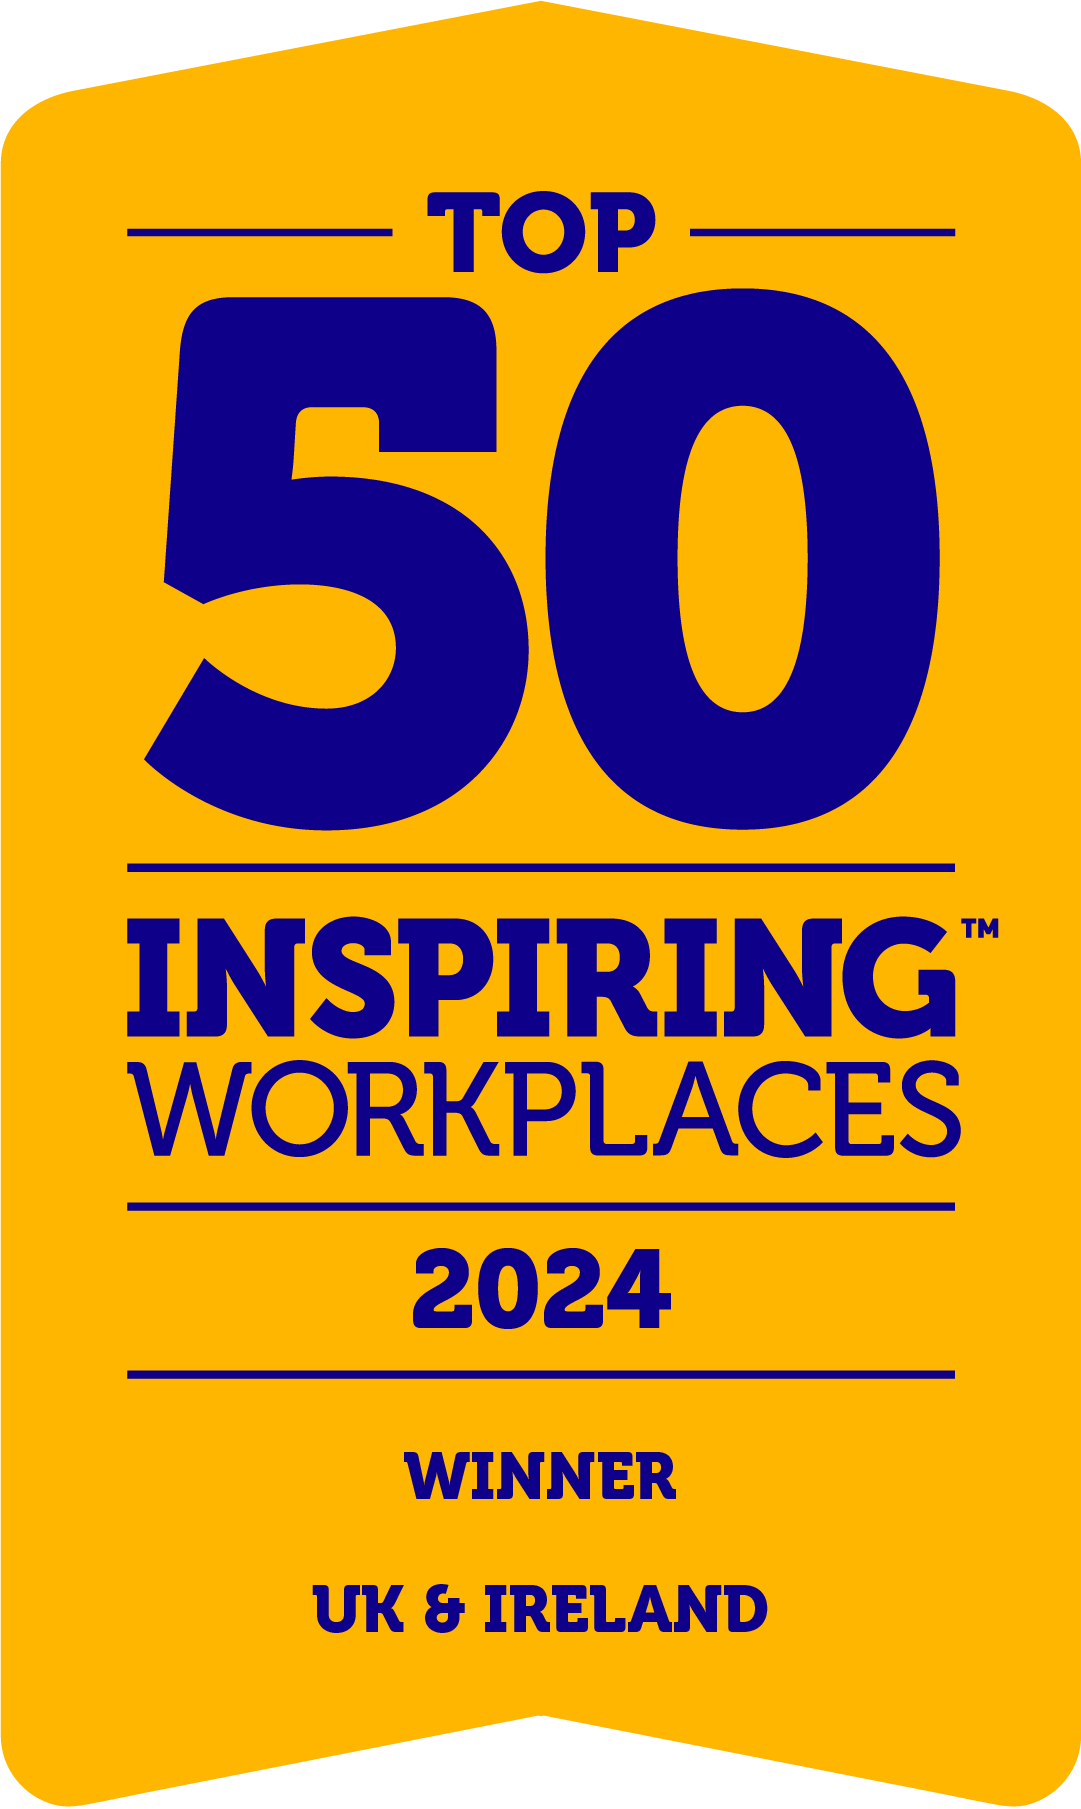 Inspiring workplaces logo